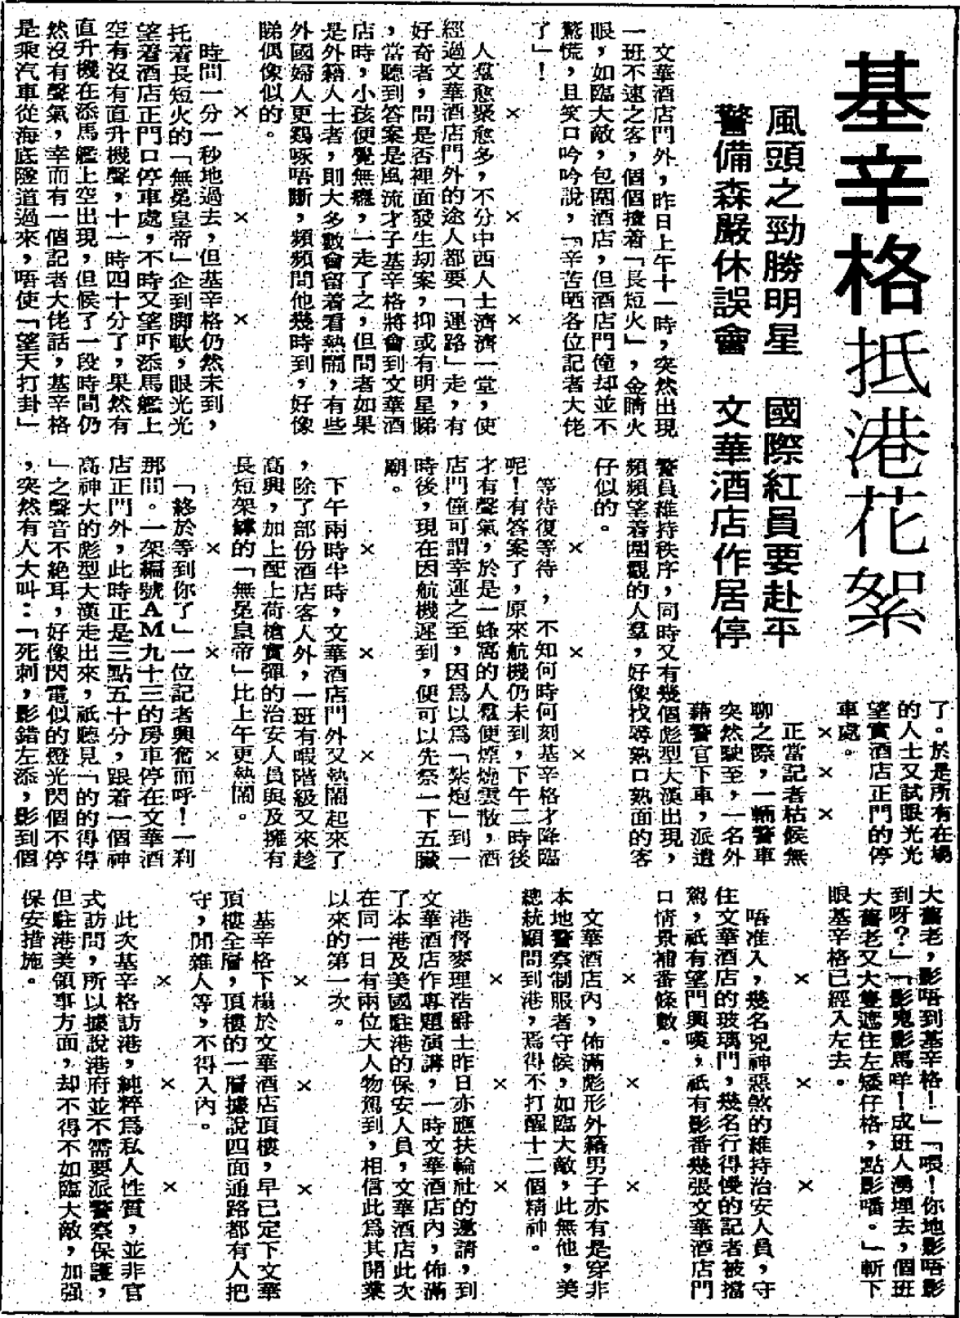 《香港工商日報》，1973 年 2 月 14 日。